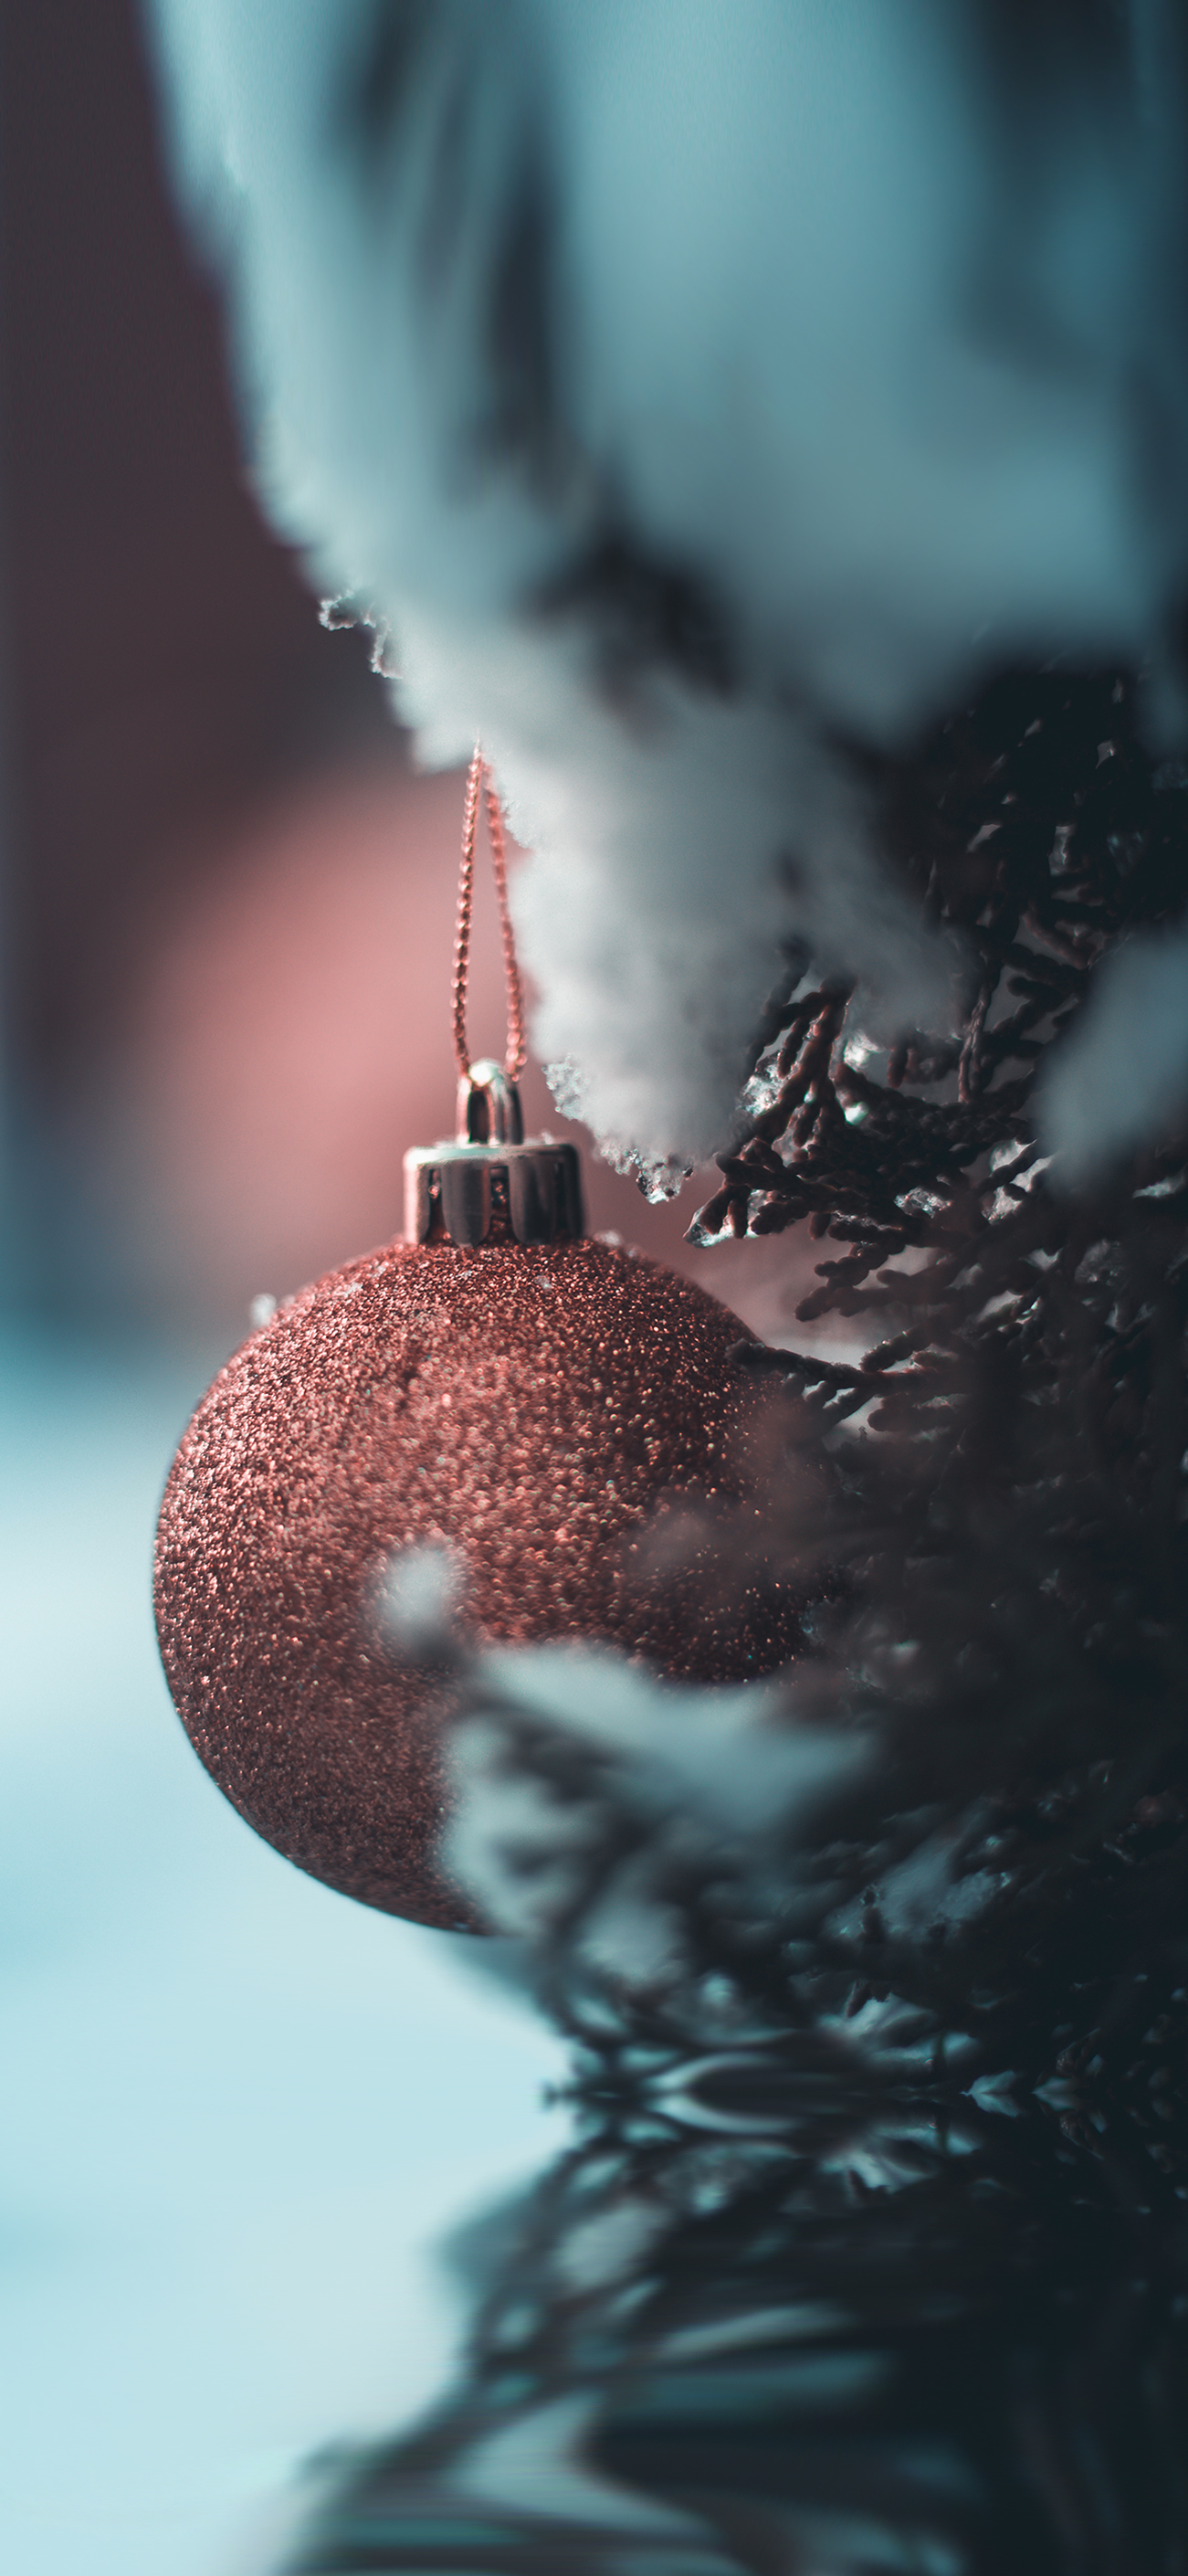 Hình nền Giáng sinh thứ hai trong bộ sưu tập Central giúp bạn thật sự cảm thấy một mùa lễ hội rực rỡ trên màn hình của mình. Với các hình ảnh những quả cầu đầy đủ màu sắc và ánh sáng rực rỡ, Mùa Giáng sinh năm nay của bạn sẽ trở nên vui vẻ hơn nhiều.